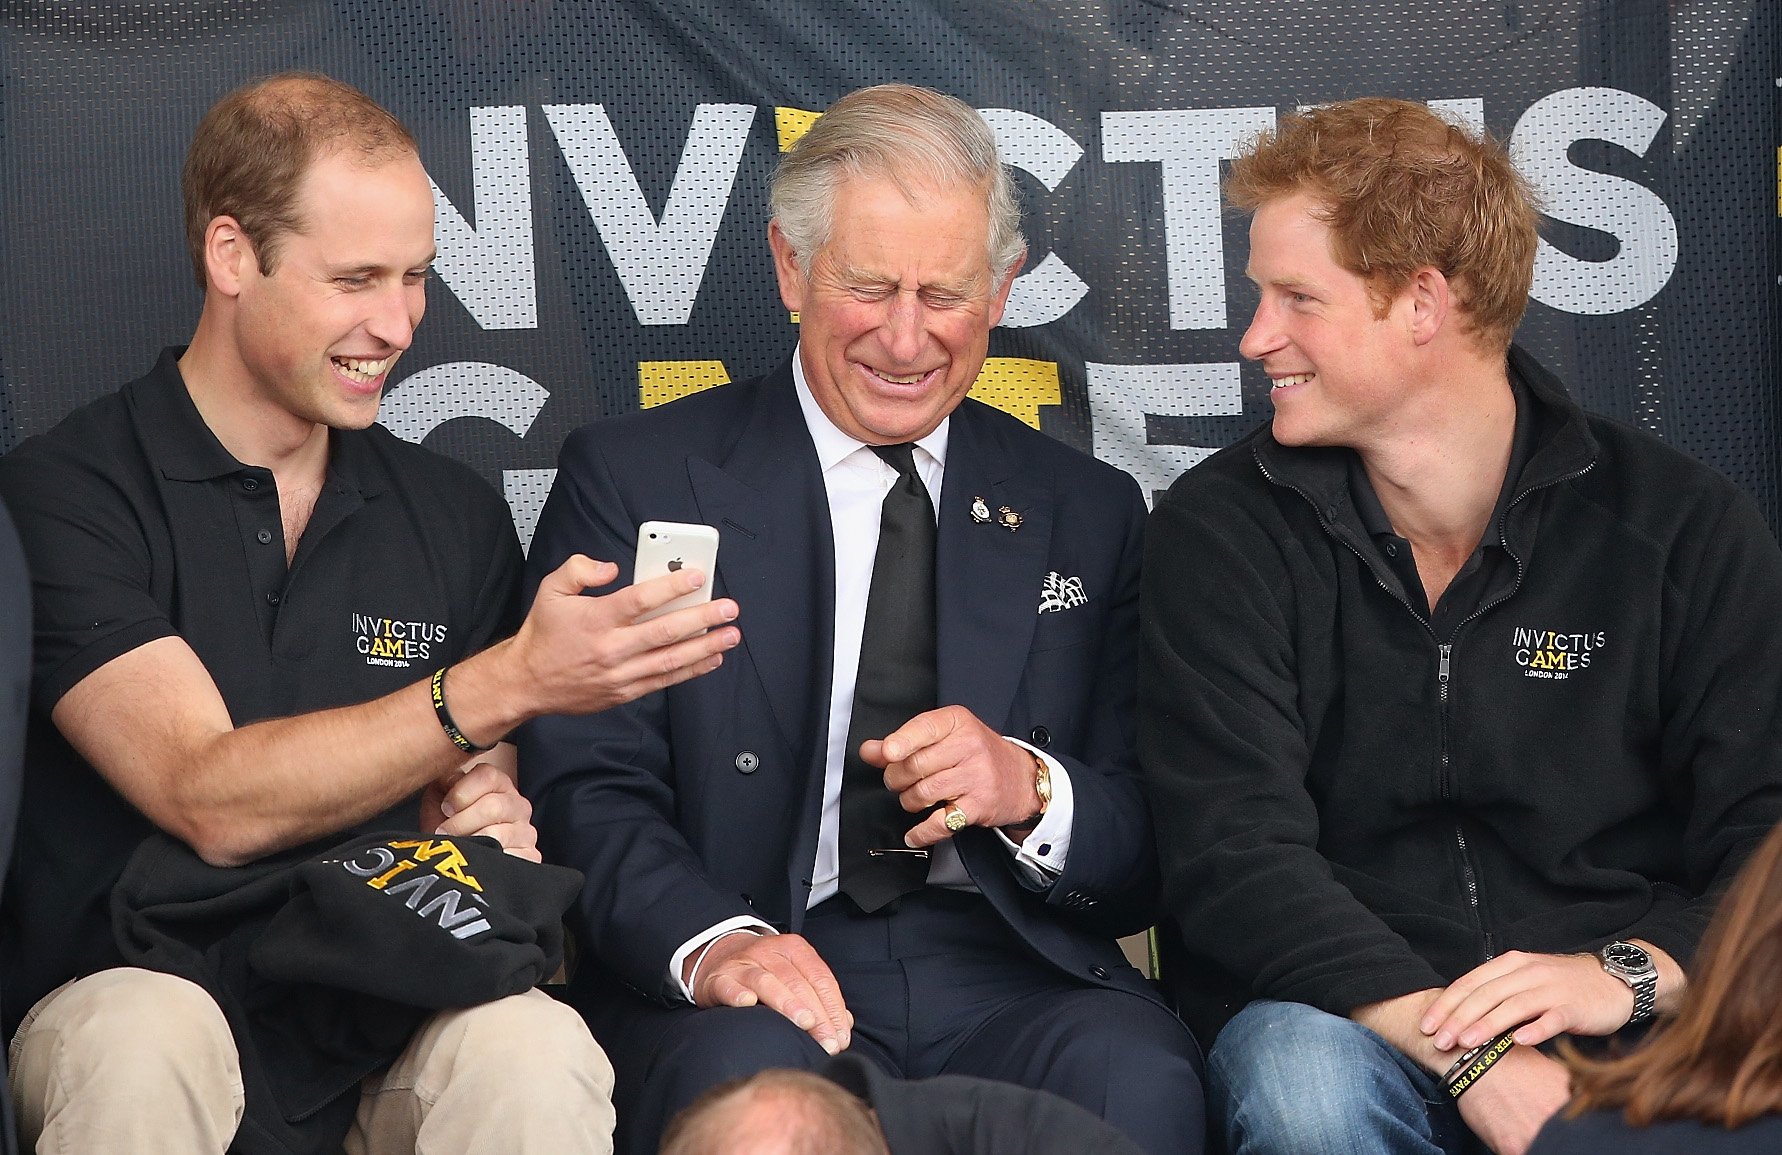 El príncipe William, el rey Charles III y el príncipe Harry en Londres, en 2014. | Foto: Getty Images